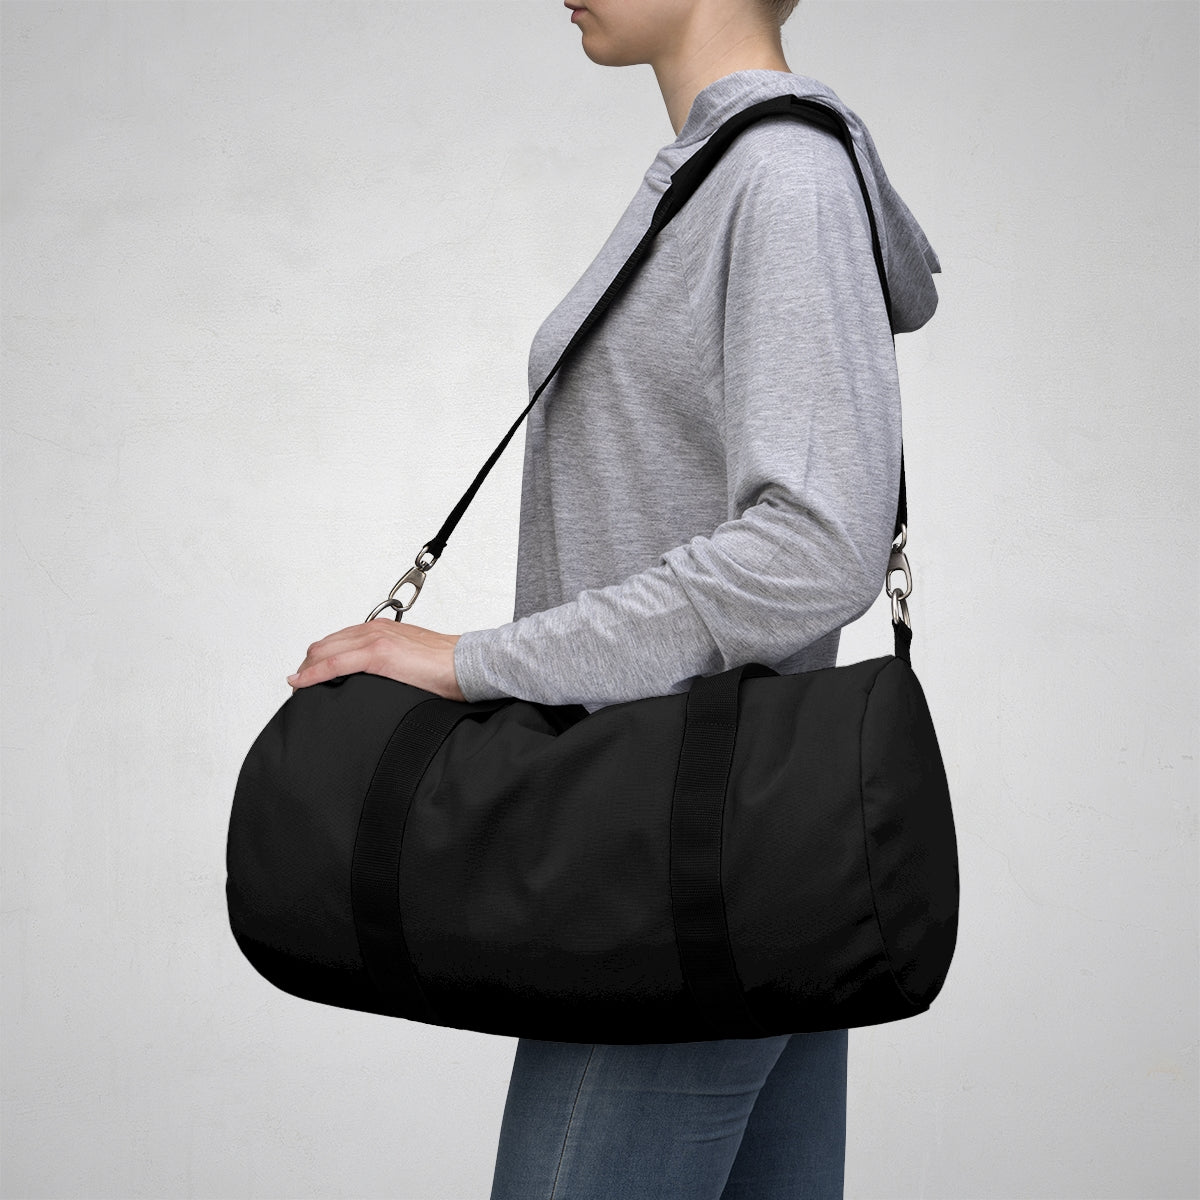 Black Duffel Bag (Discreet)